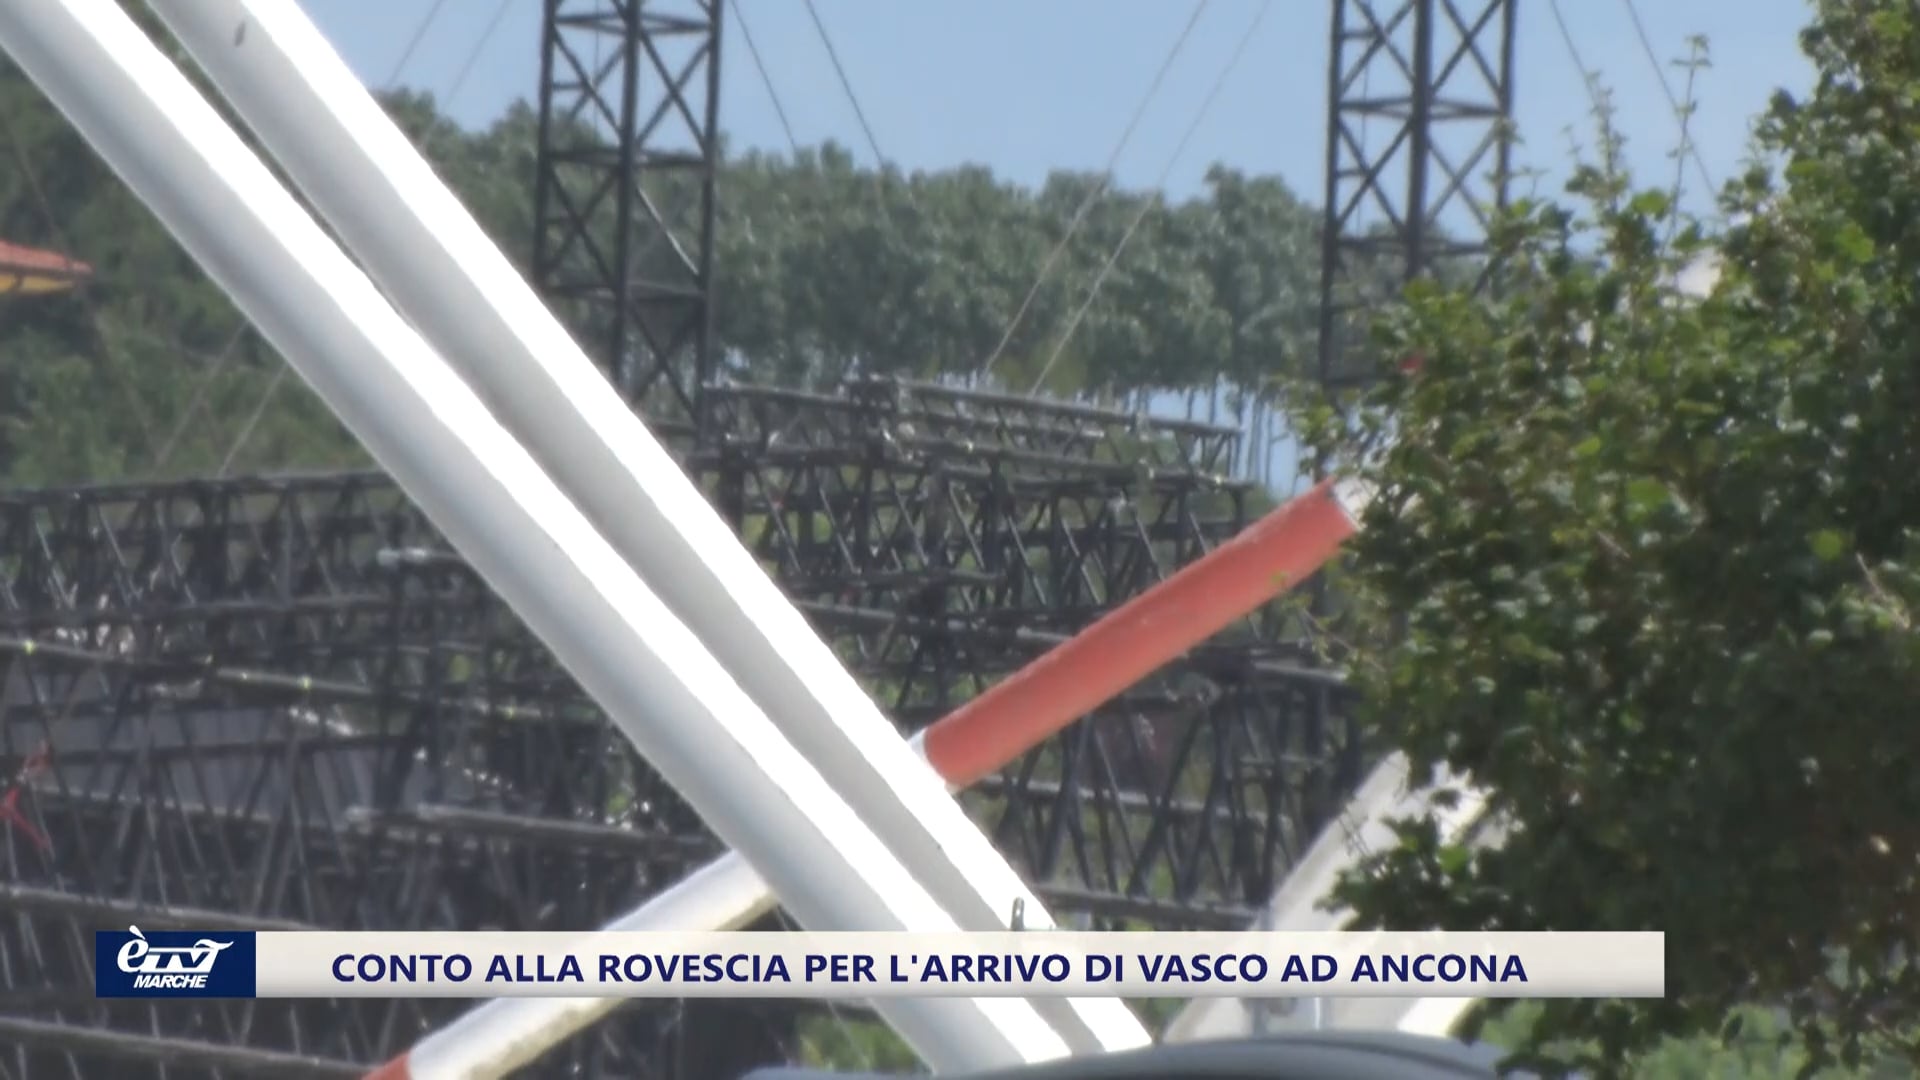 Conto alla rovescia per l'arrivo di Vasco ad Ancona - VIDEO